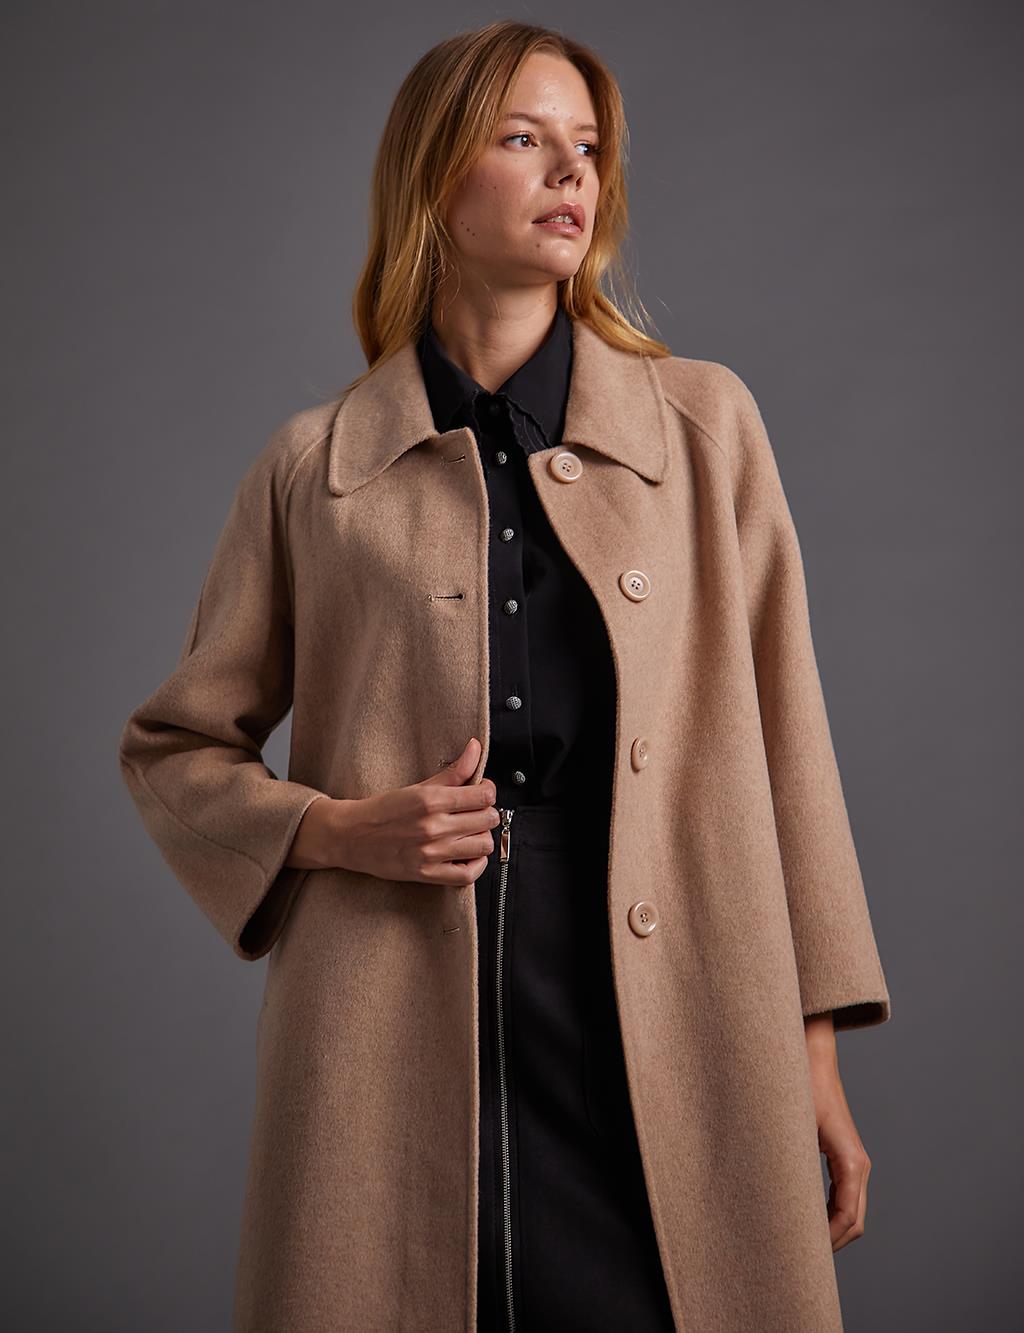 Premium Wool Buttoned Wide Collar Coat Beige